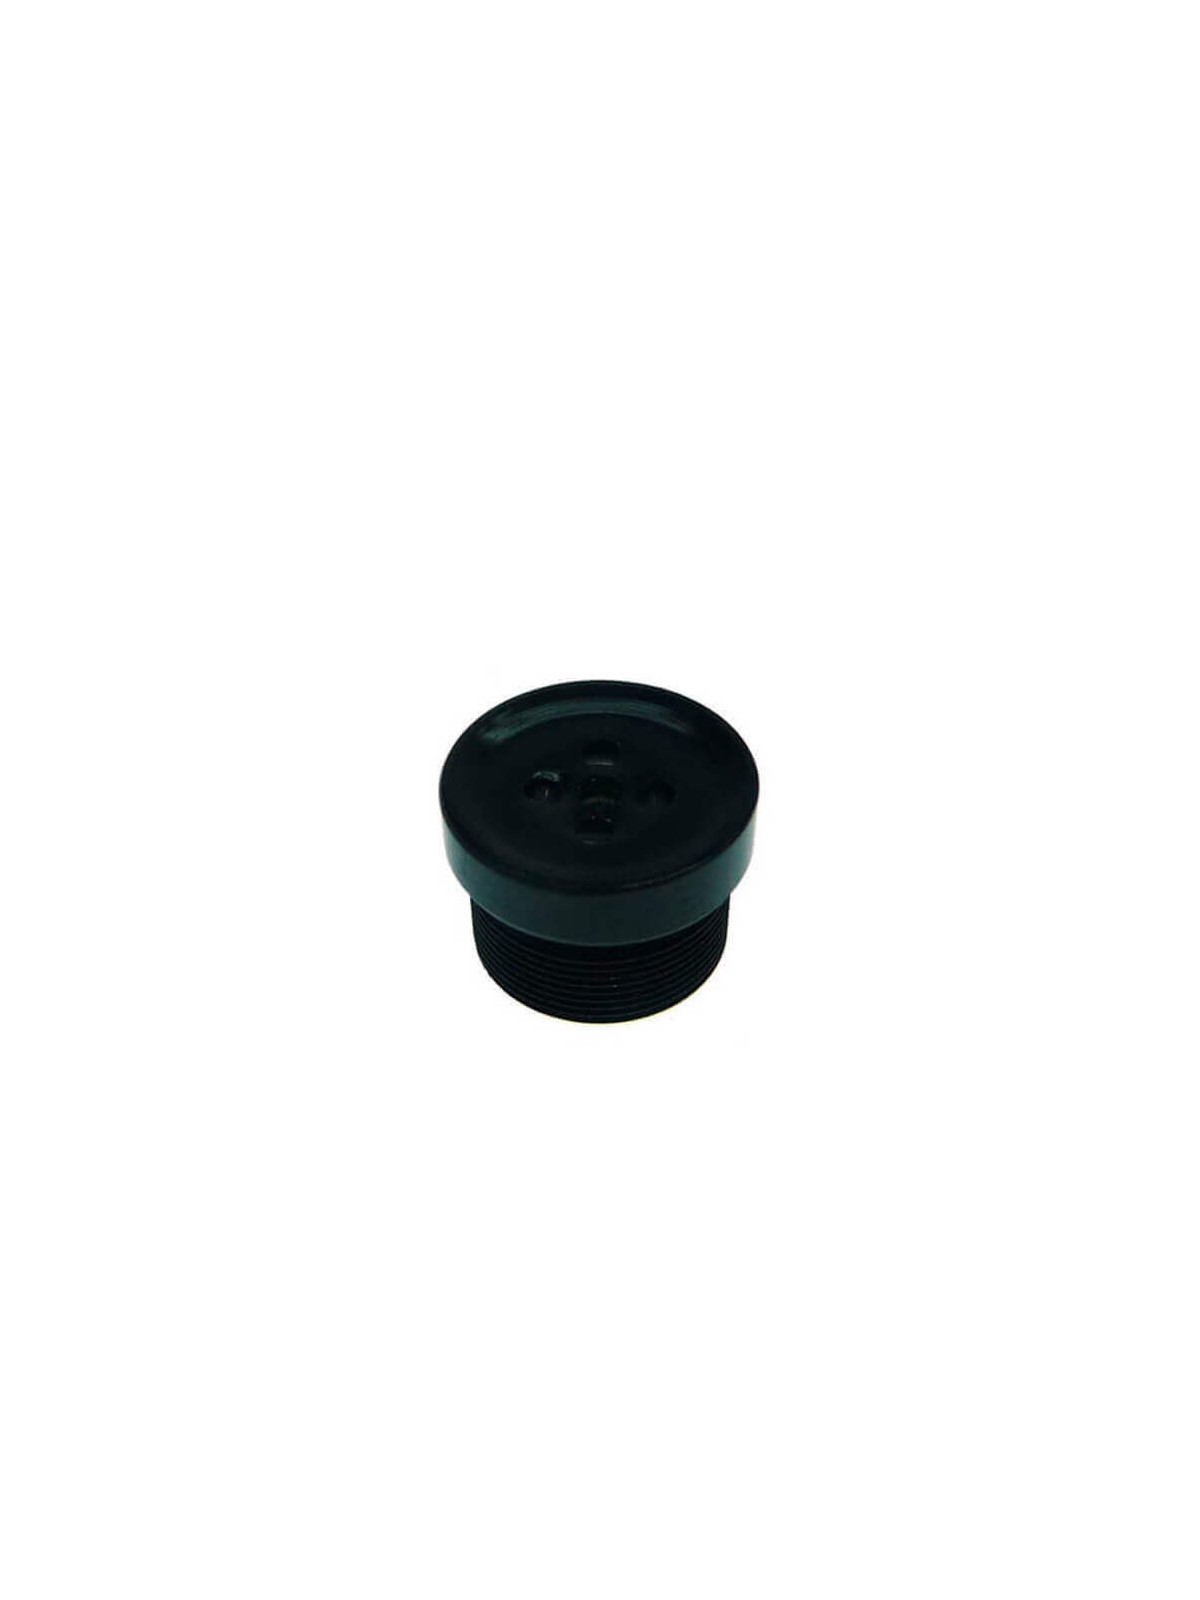 Lente fija mini tipo Board Lens pinhole botón 3.7mm